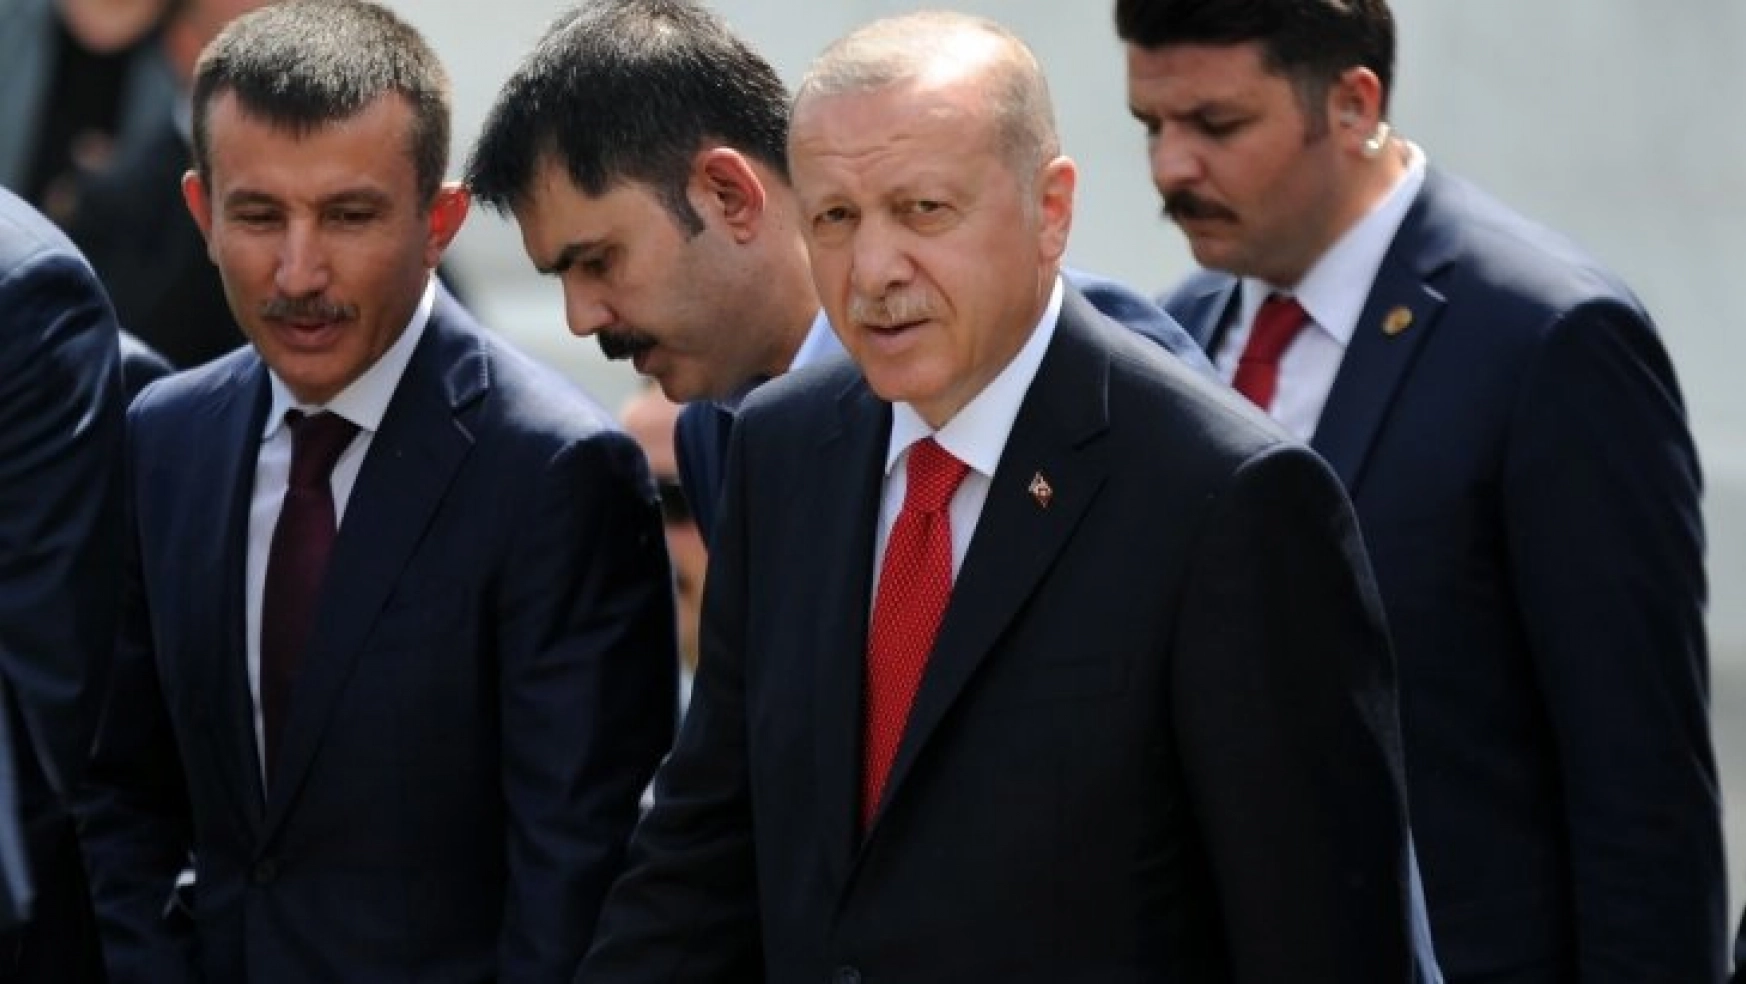 Cumhurbaşkanı Erdoğan'dan Davutoğlu'na Bagajlarında ne varsa ortaya dökmelerinde fayda var